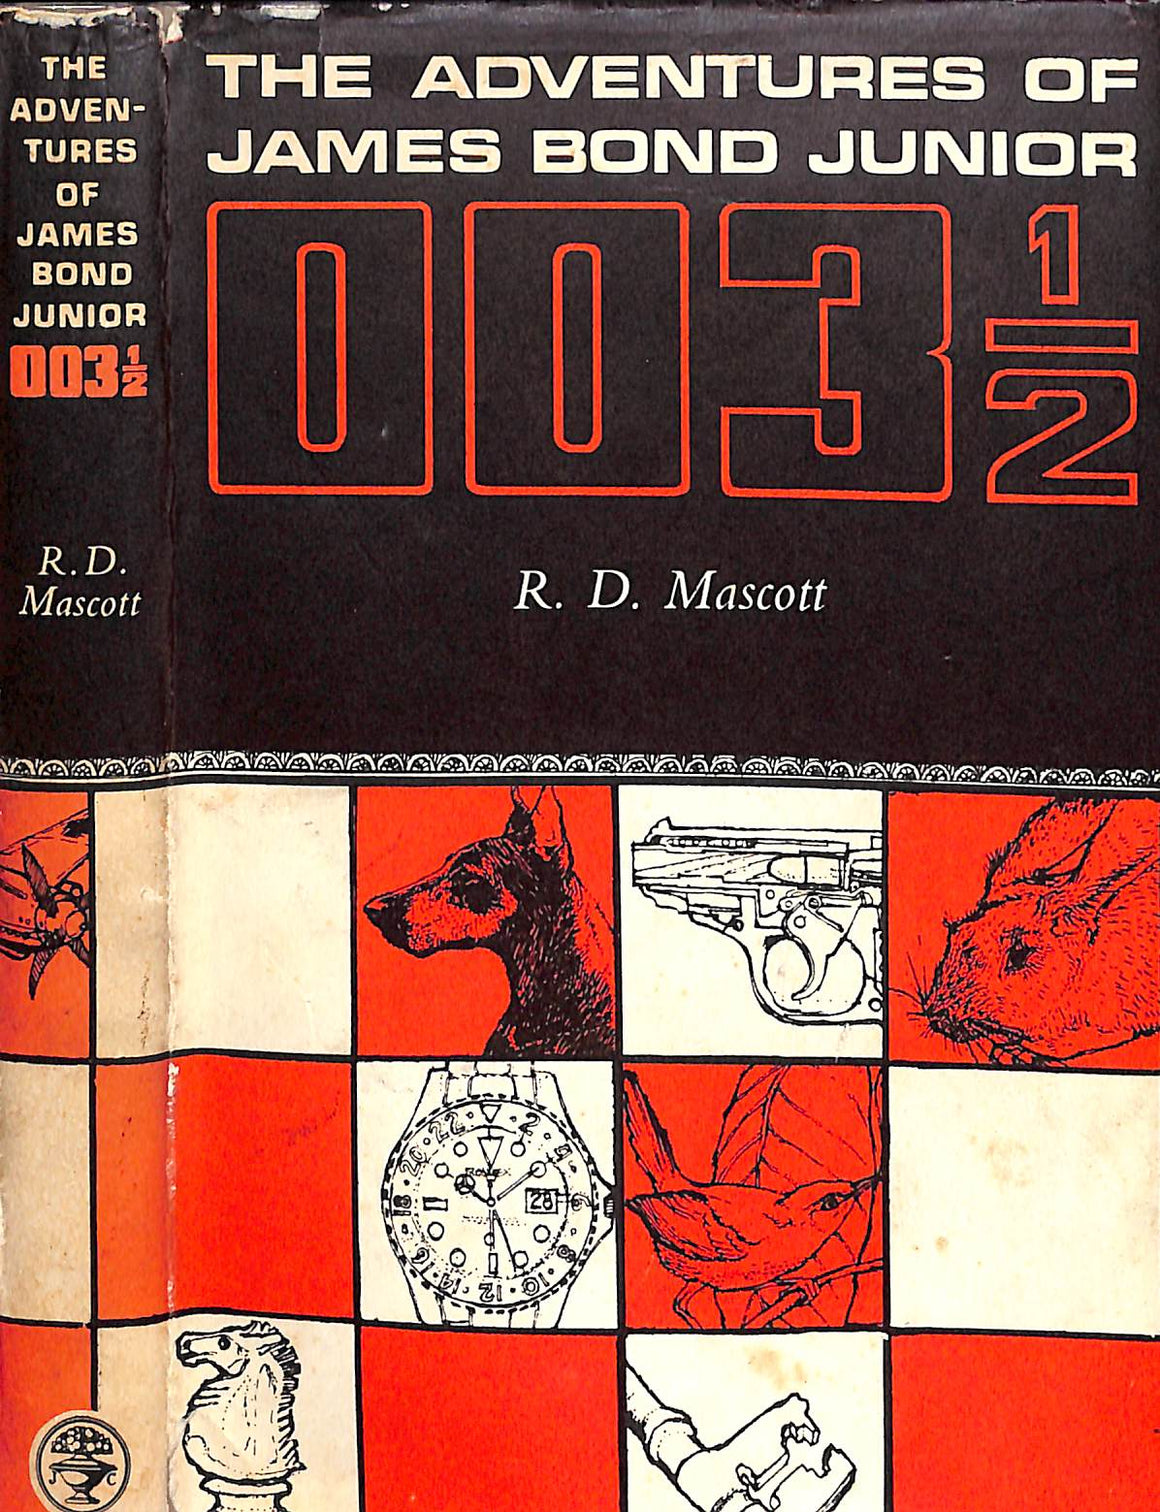 "The Adventures of James Bond Junior: 003 1/2" Mascott, R. D.